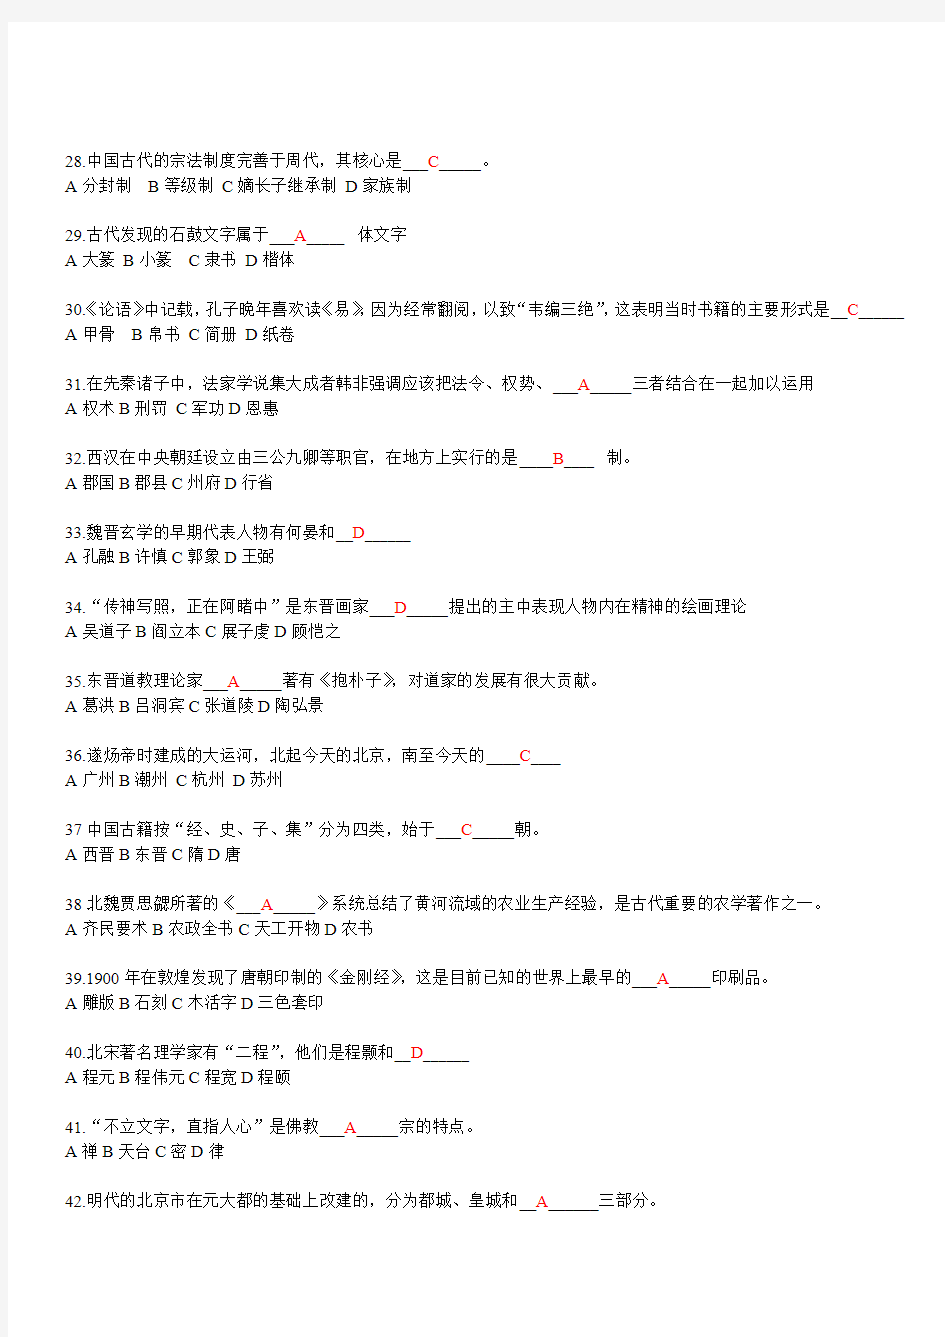 中国文化部分—96-05对外汉语基础(修改)